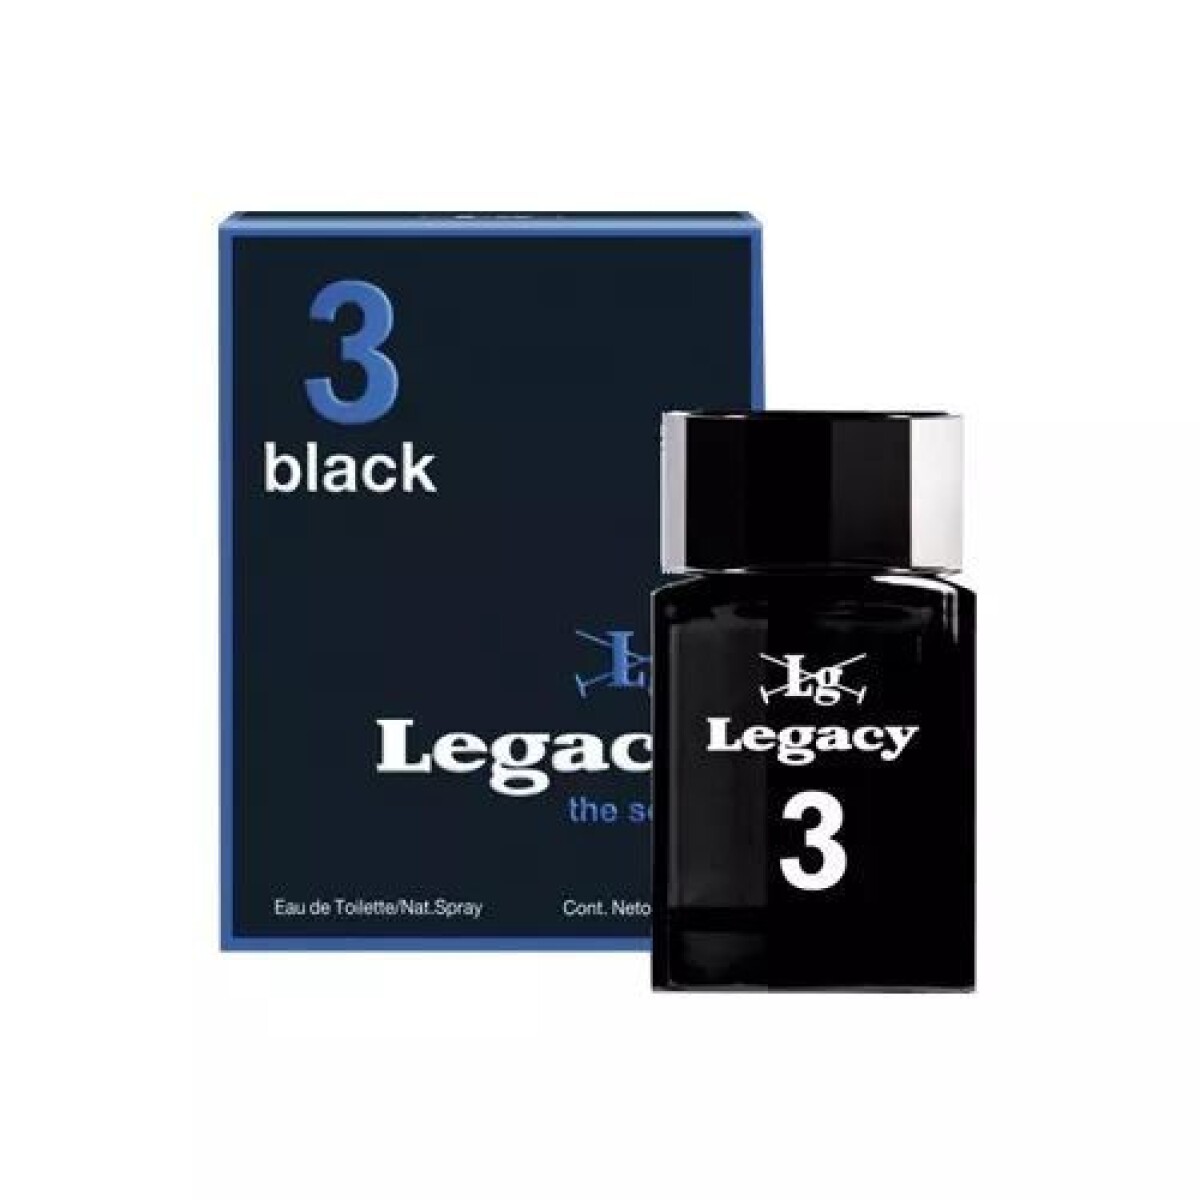 PERFUME LEGACY 3 - Black 